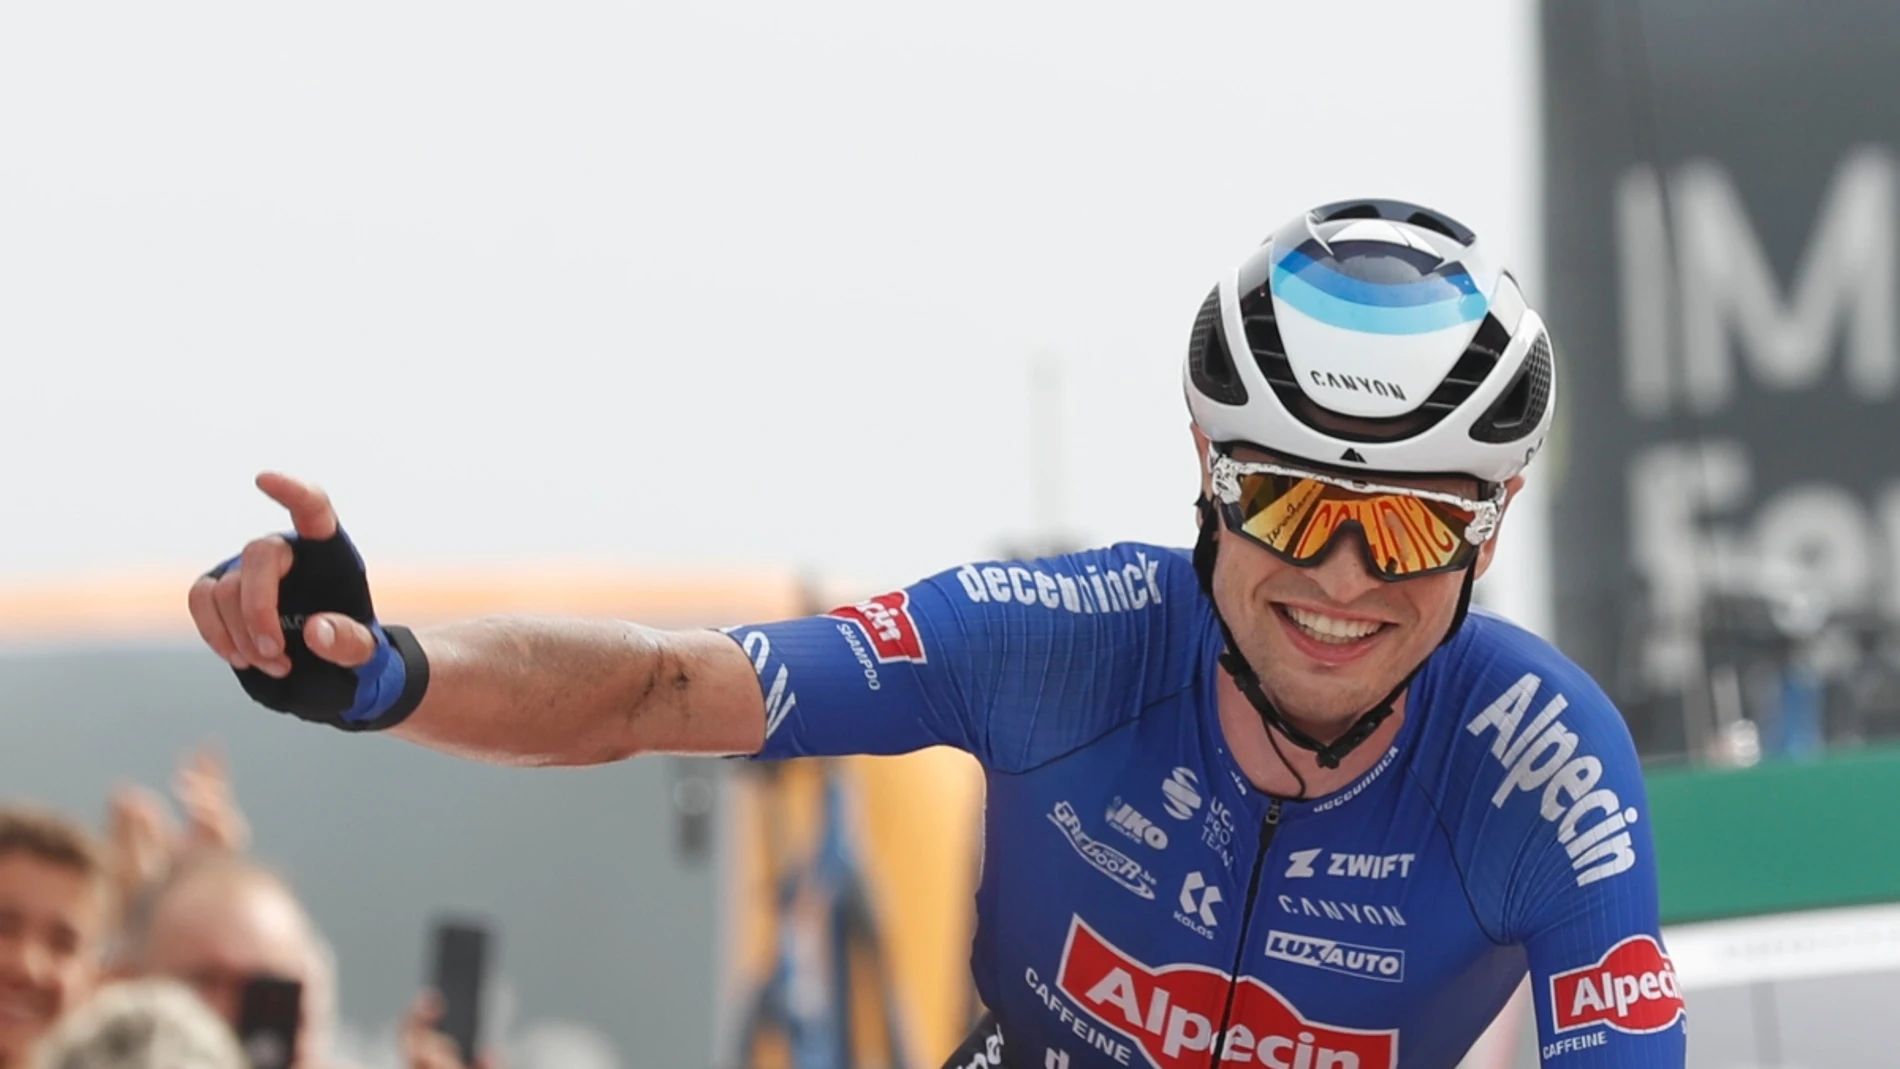 Jay Vine celebra su segunda victoria en la Vuelta a España